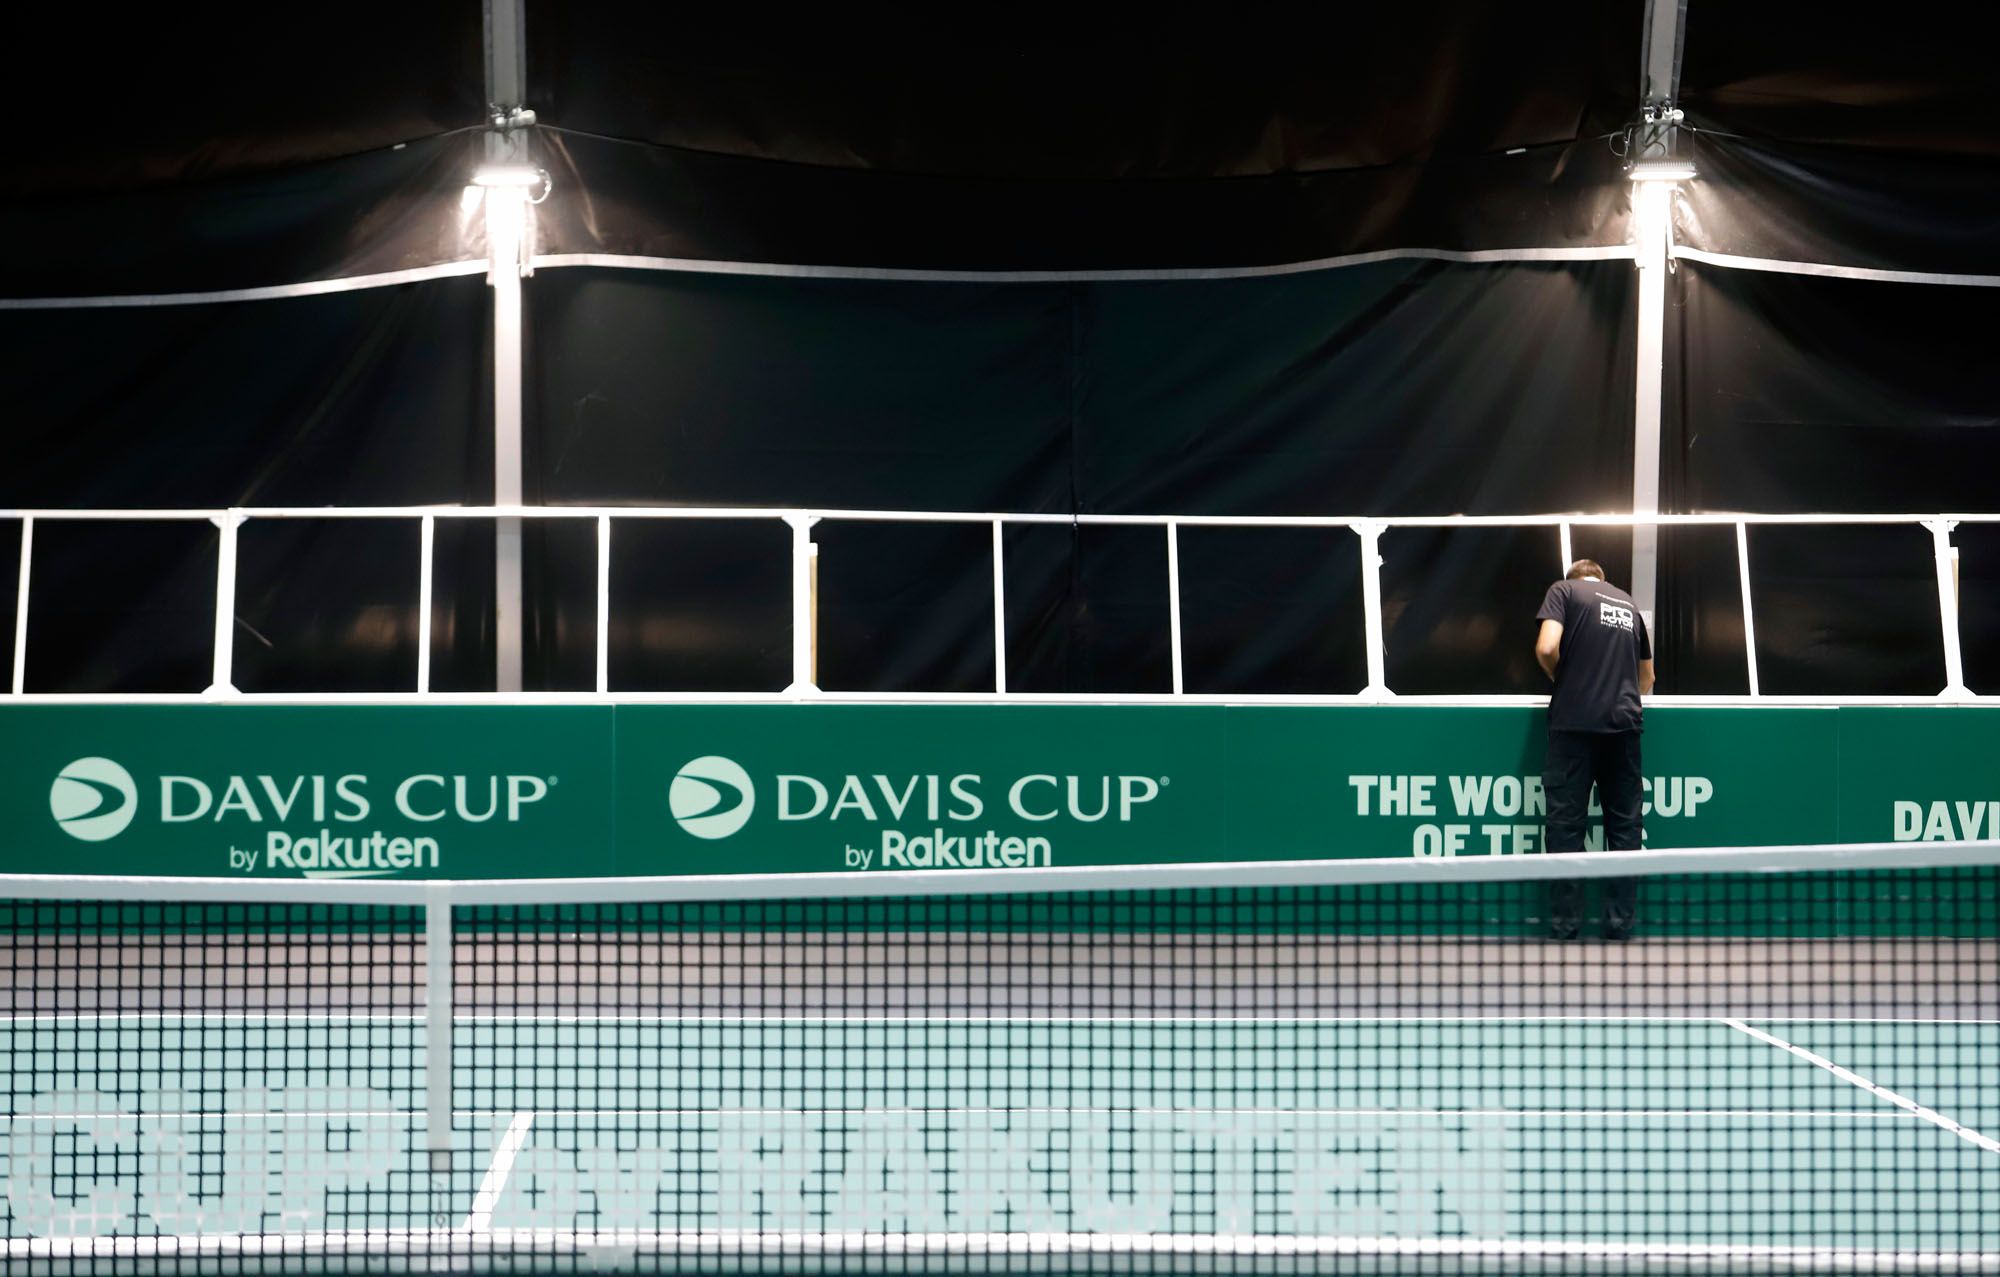 Preparativos para las Finales de la Copa Davis en el entorno del Carpena